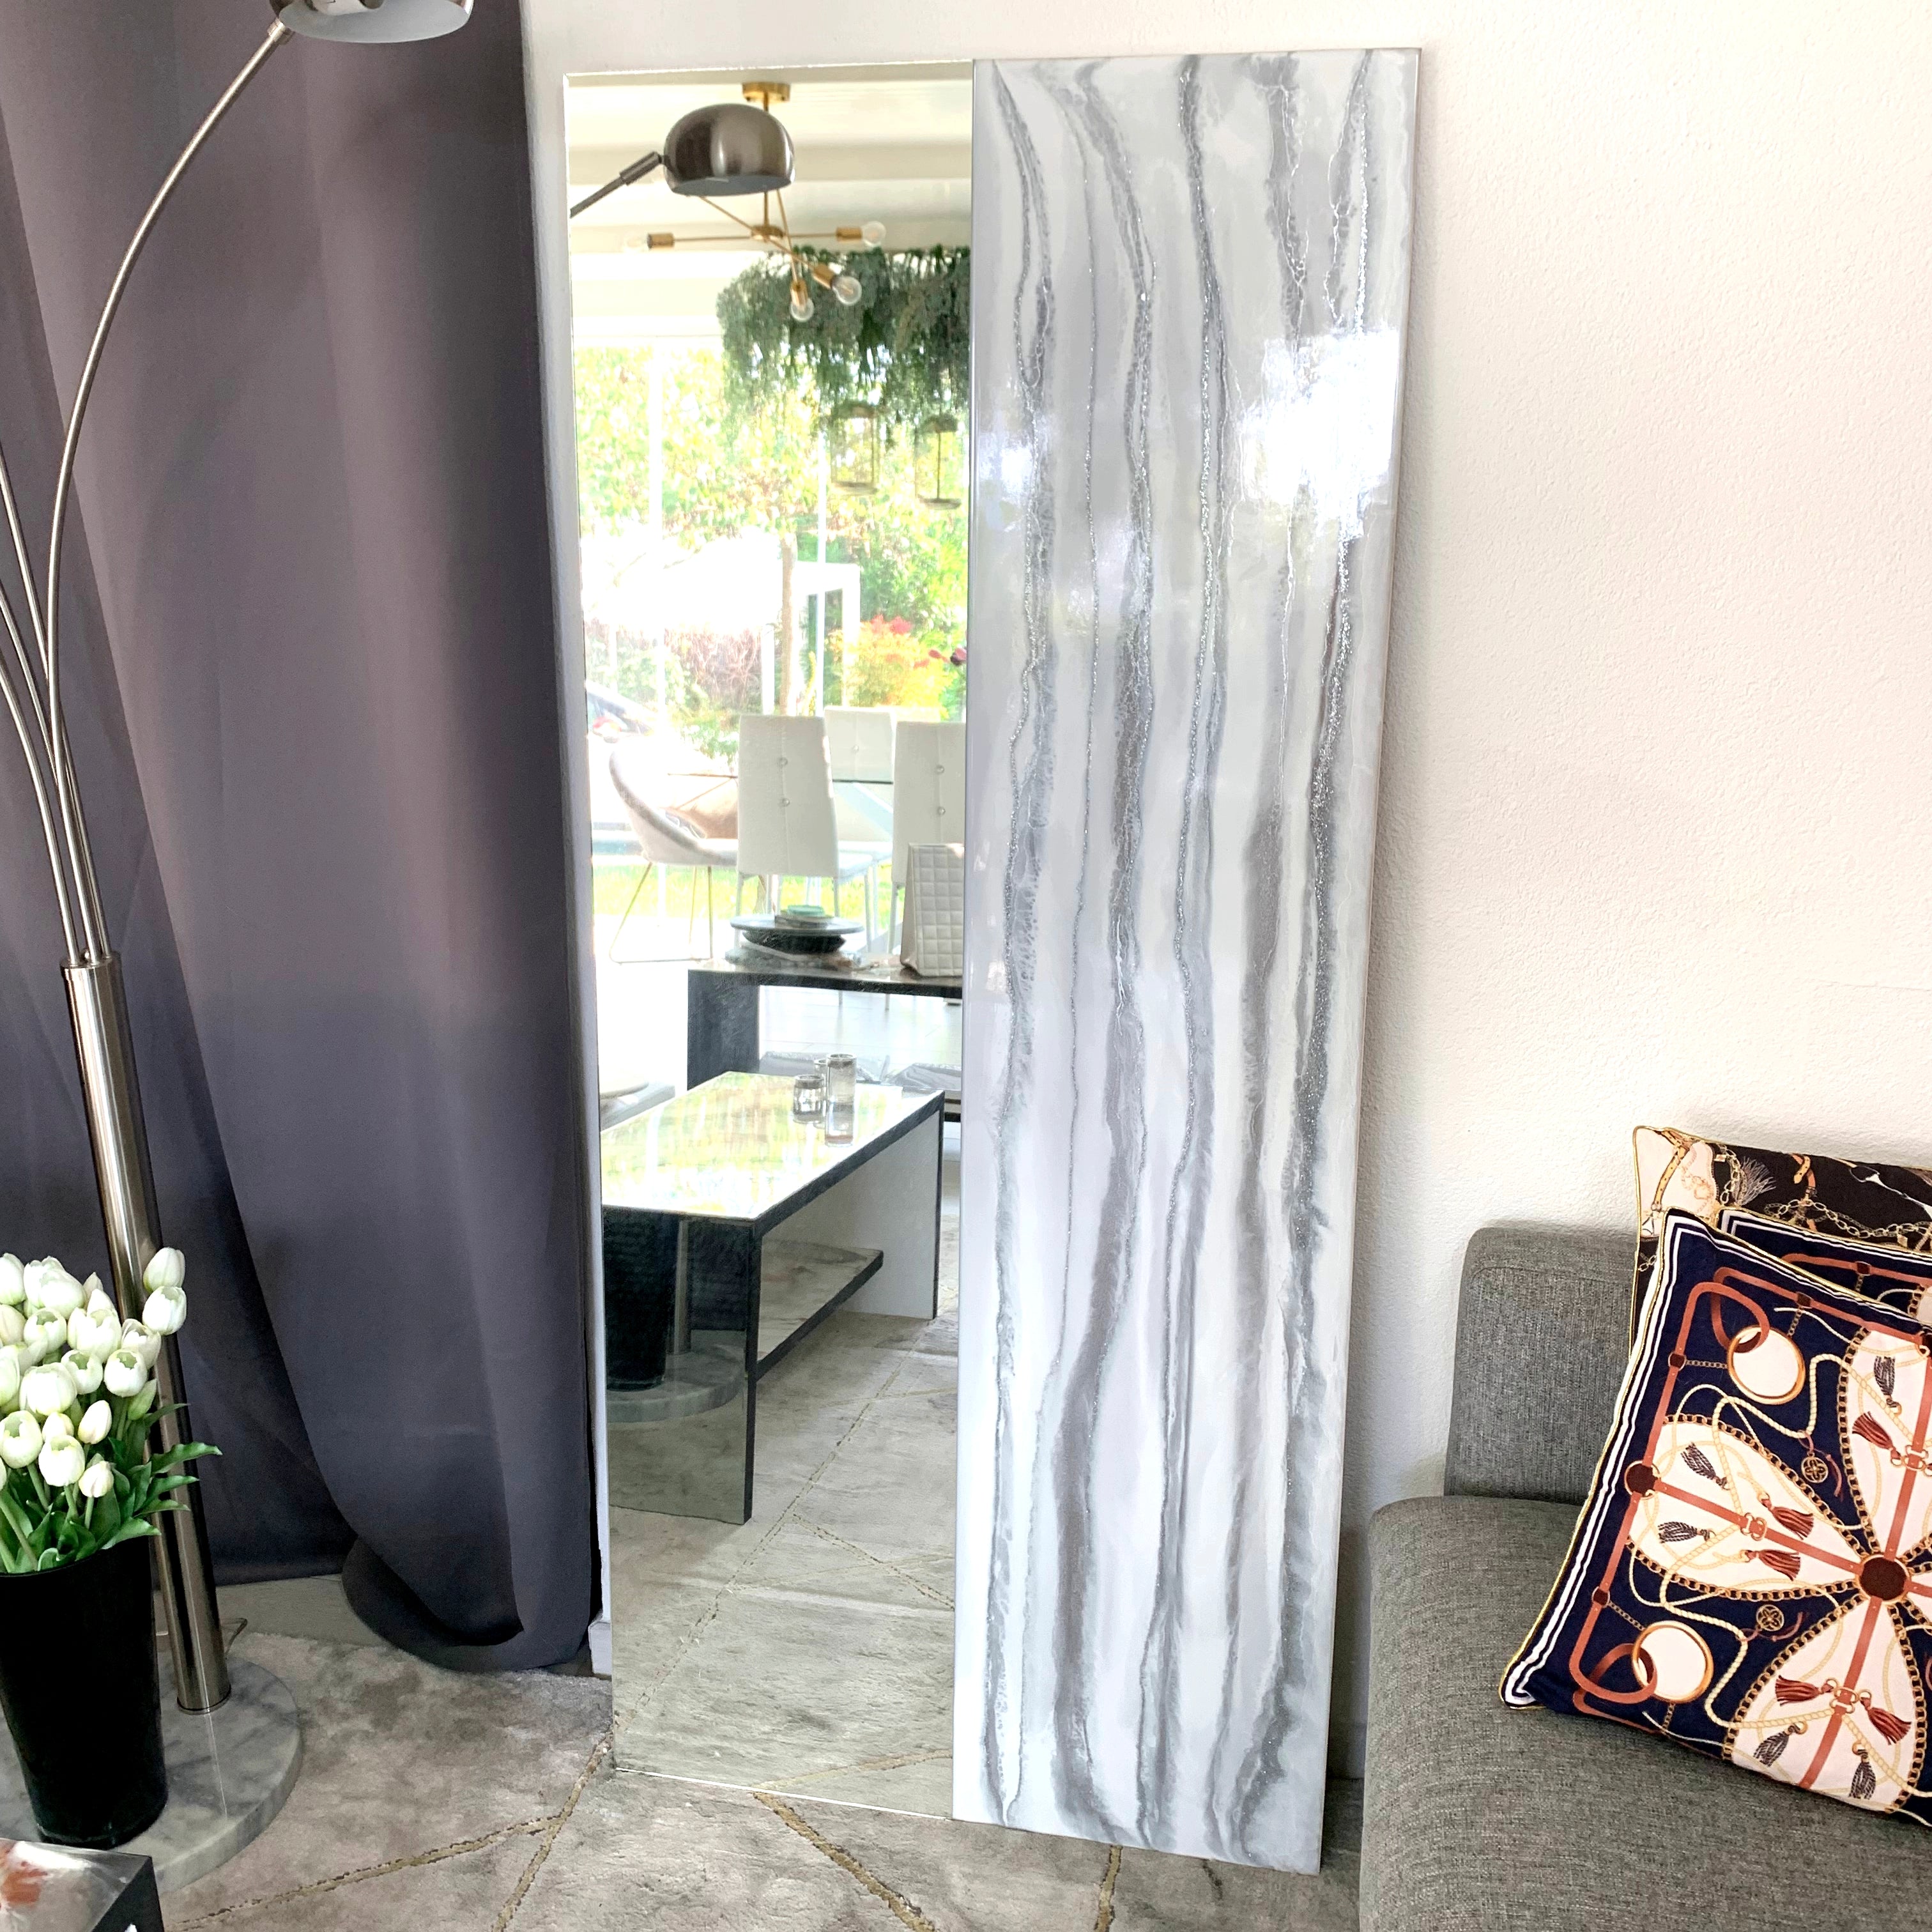 Specchio di Lusso 160x70 con marmorizzazione lucida bianco, argento e